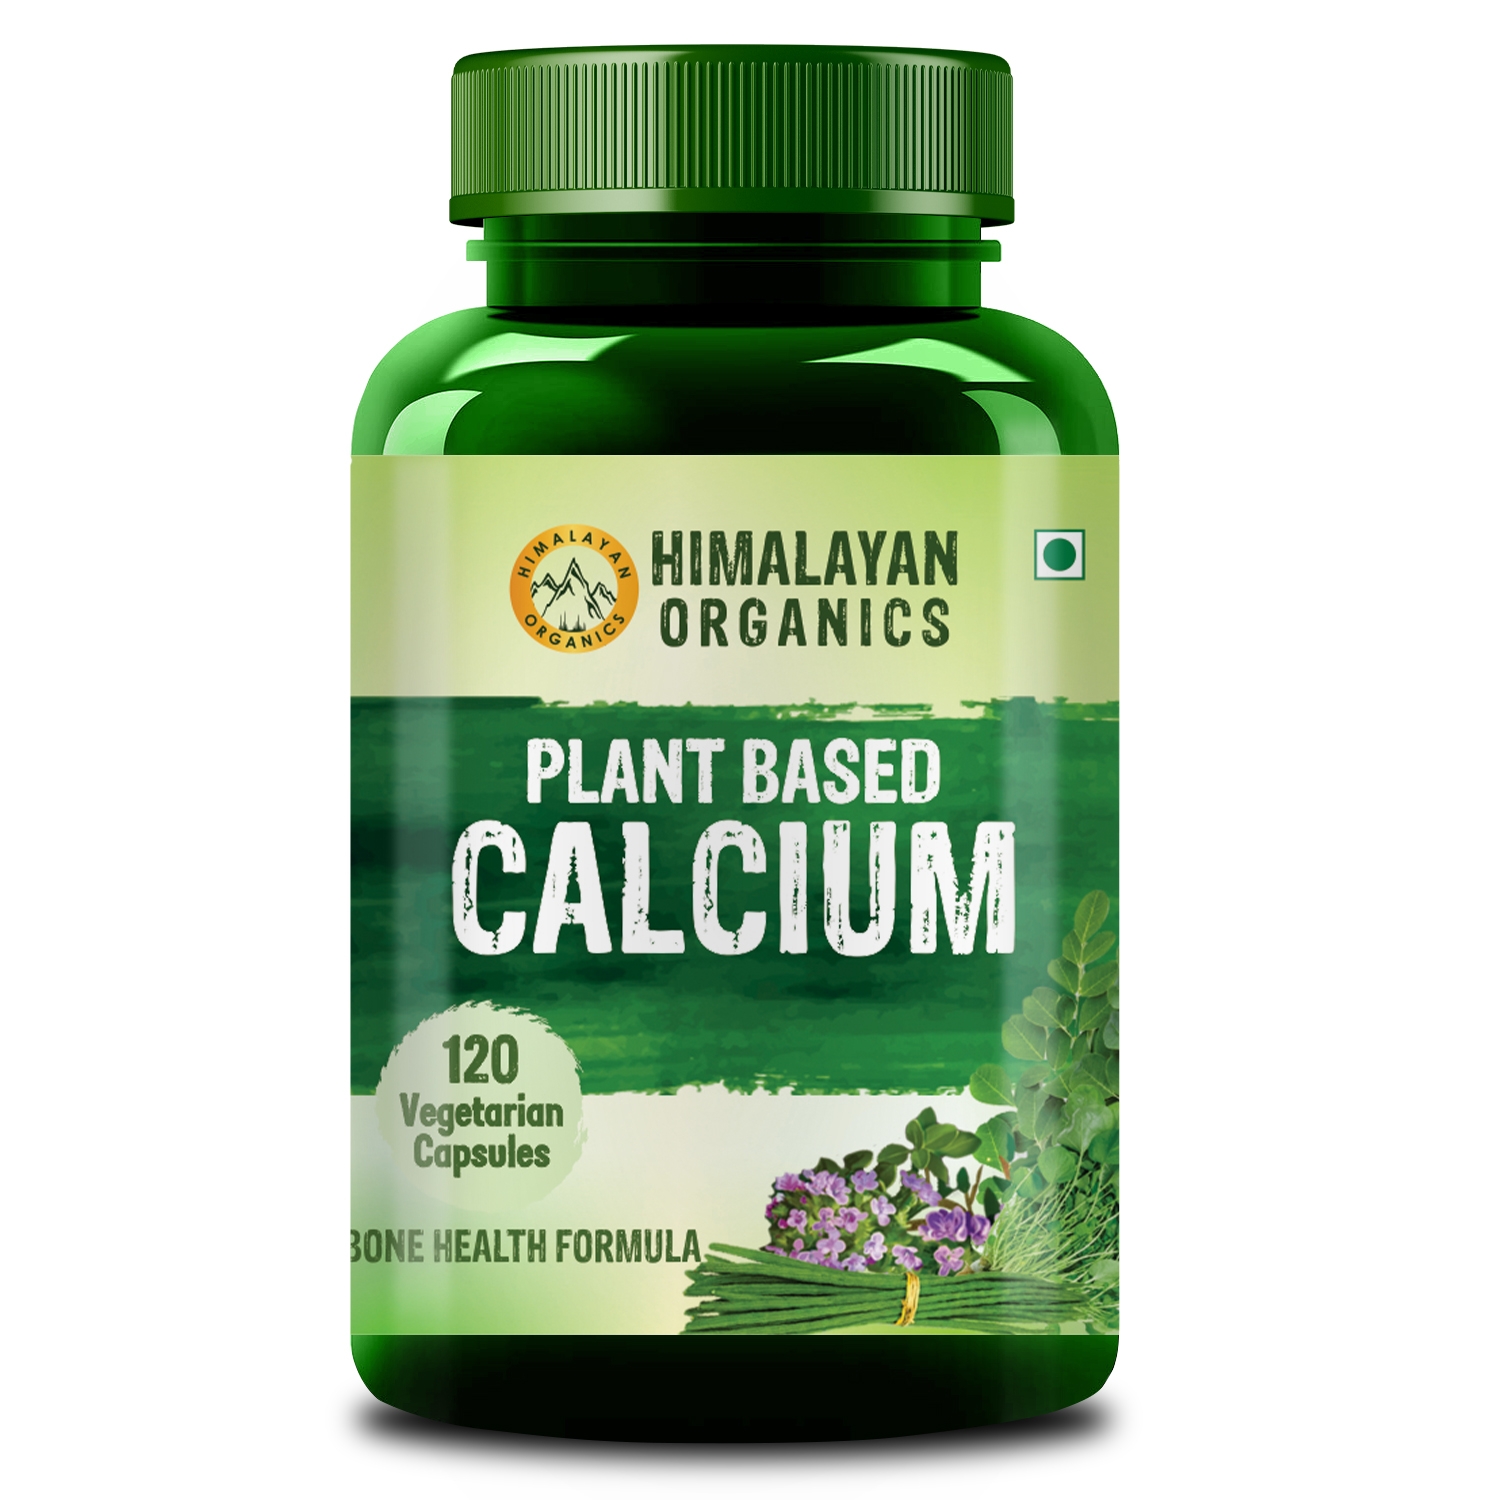 Himalayan Organics Plant Based Calcium for Bone Health- 120 Vegetarian Capsules